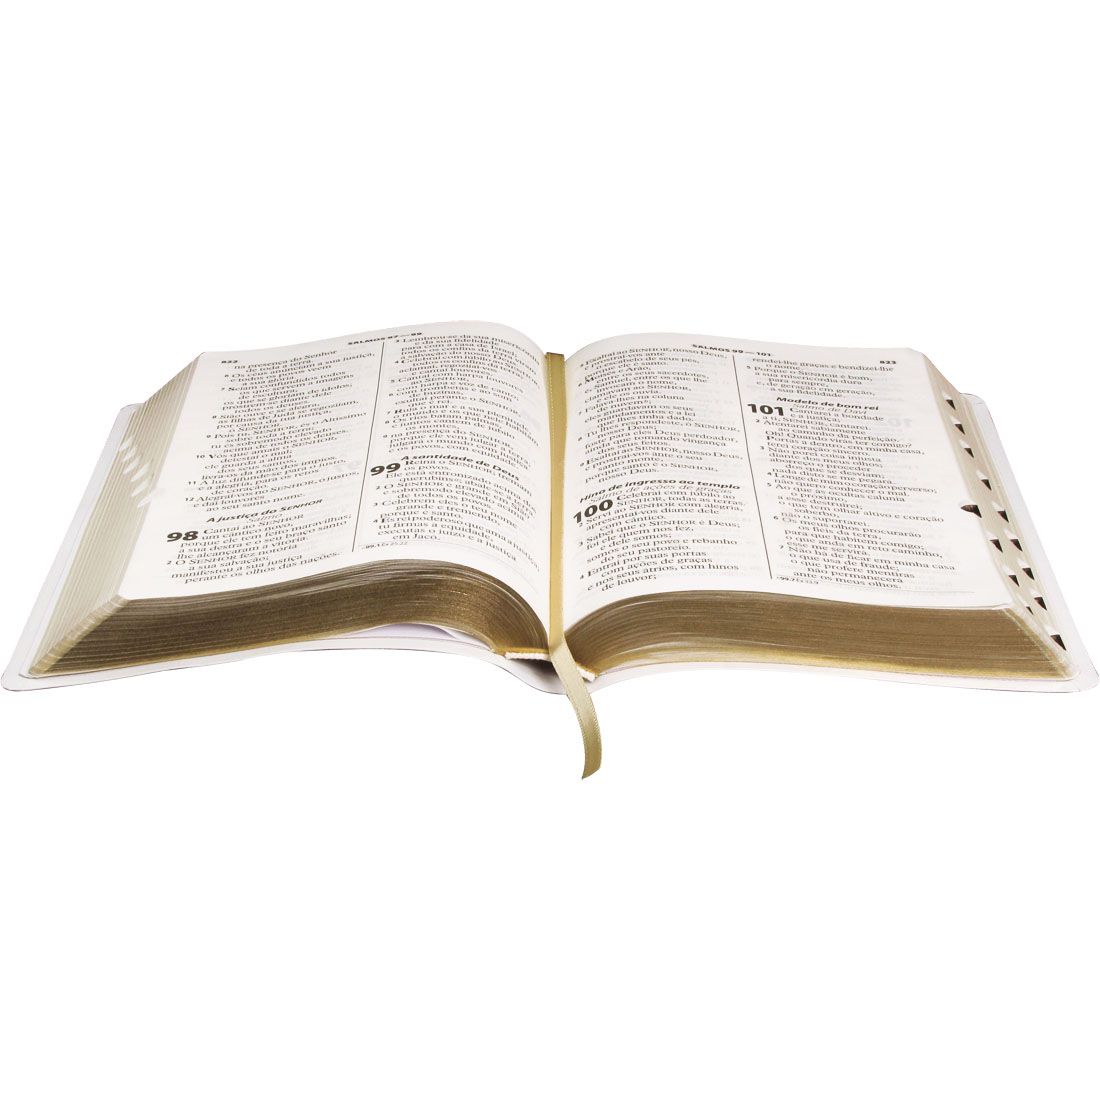 Bíblia Sagrada Letra Gigante Almeida Revista e Atualizada  Branca luxo com índice lateral.entrea entre 5-10/12